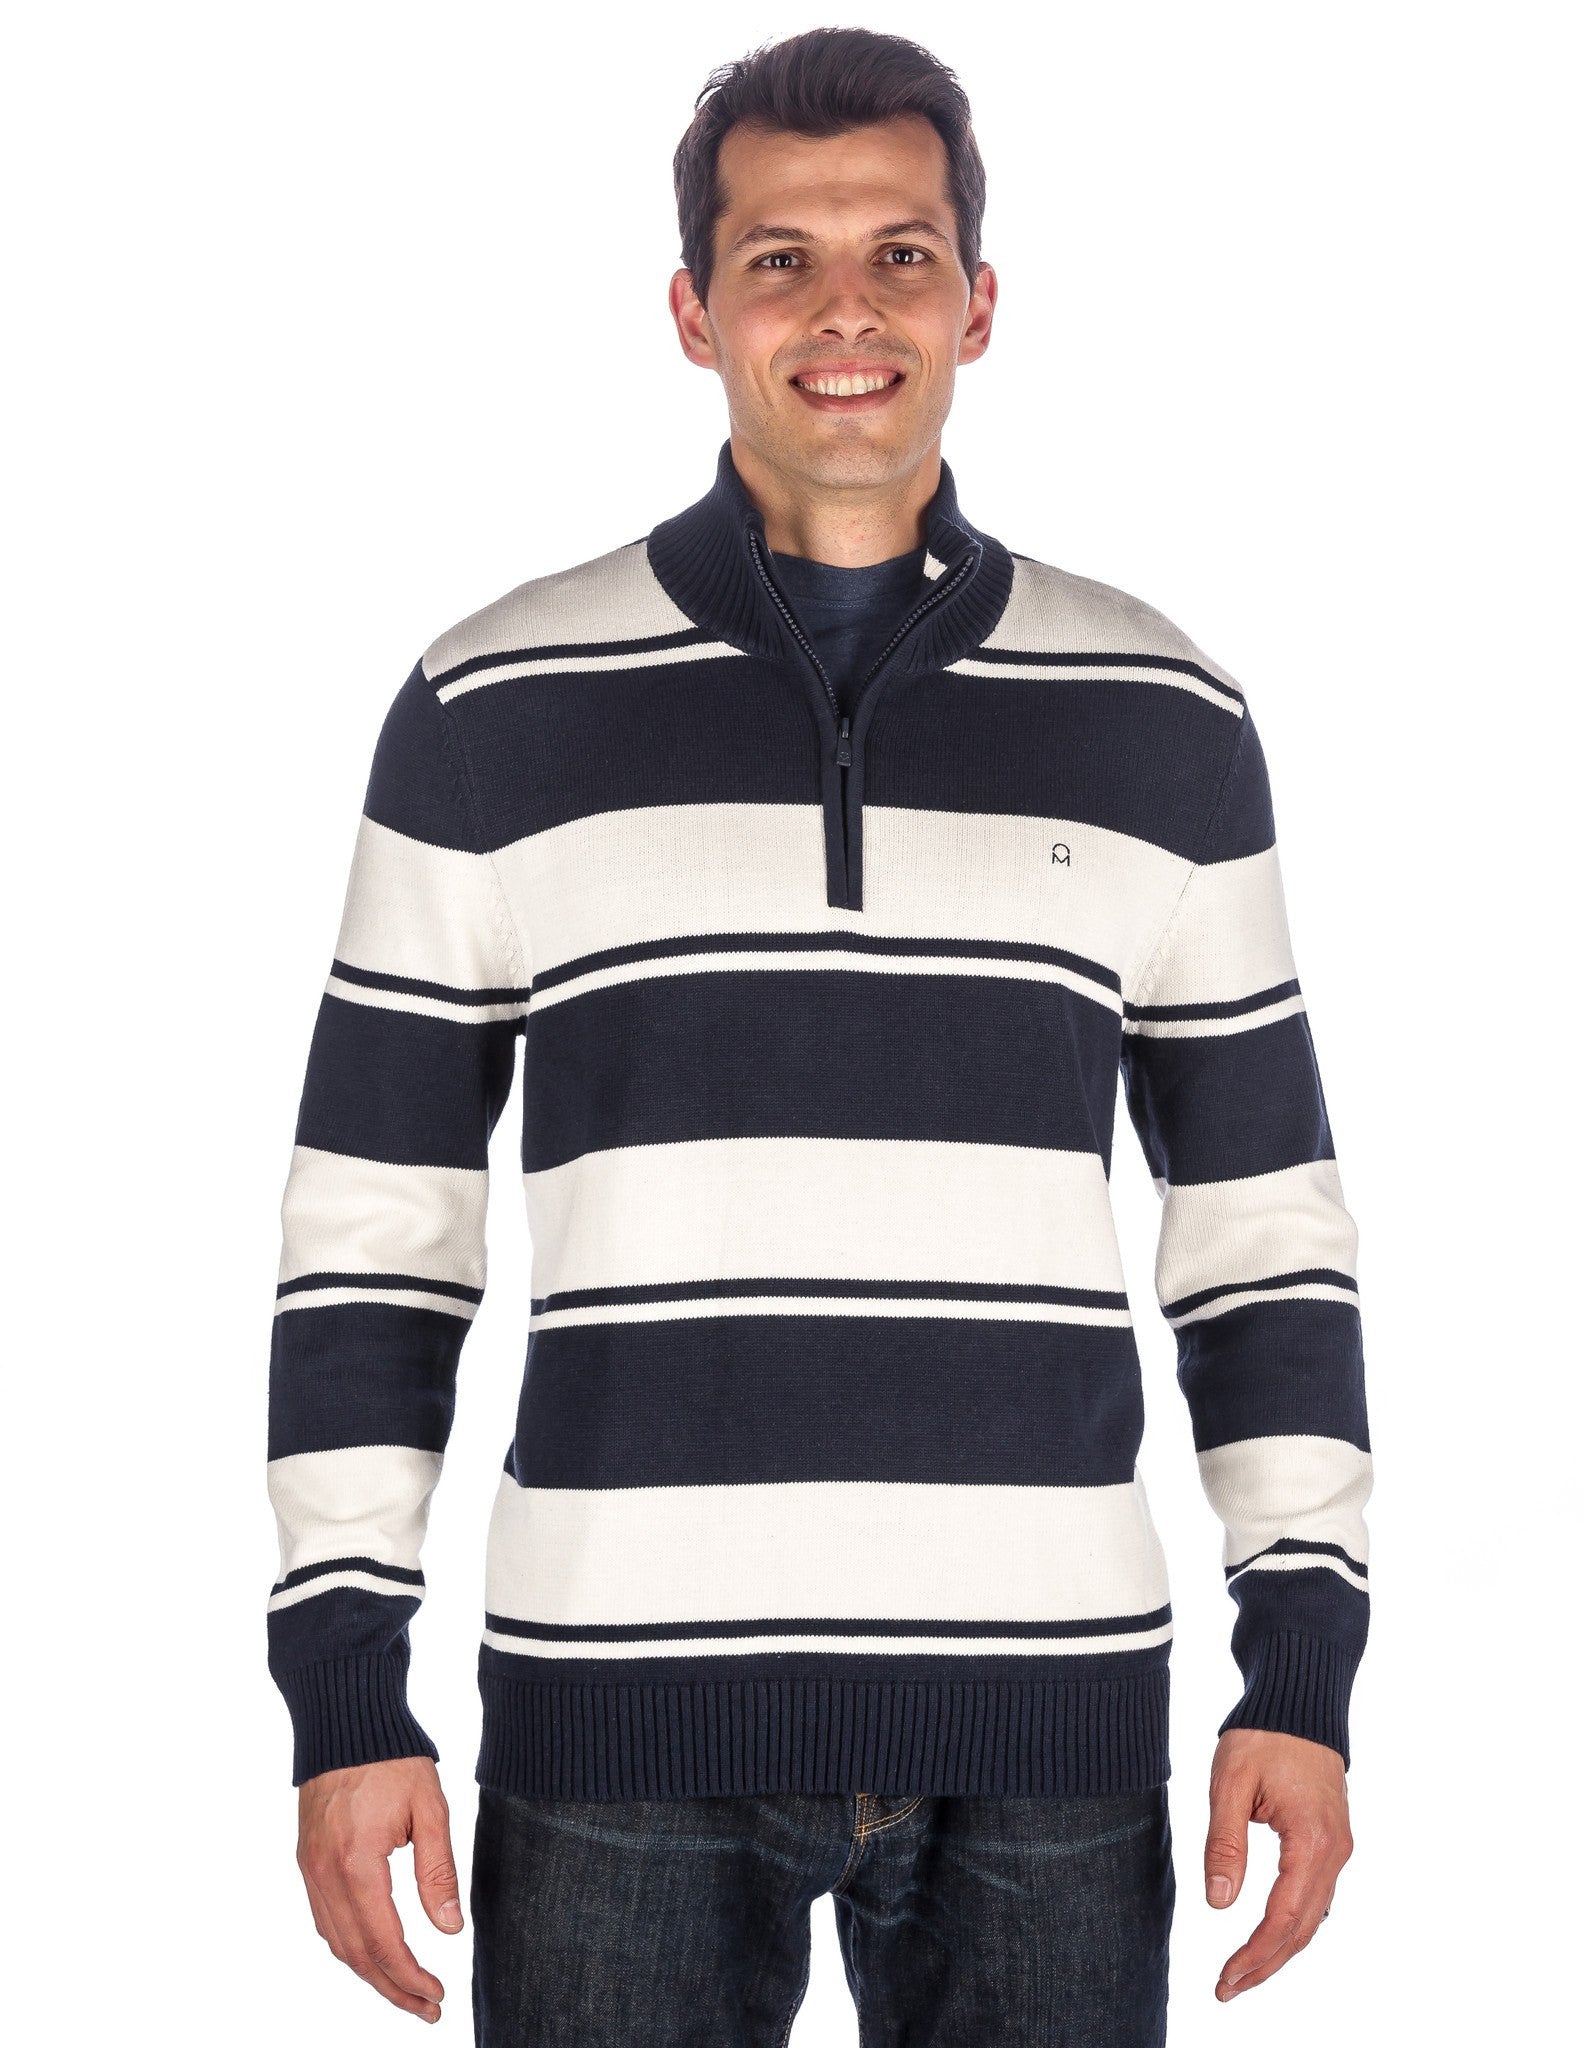 Men's 100% Cotton Half-Zip Pullover Sweater